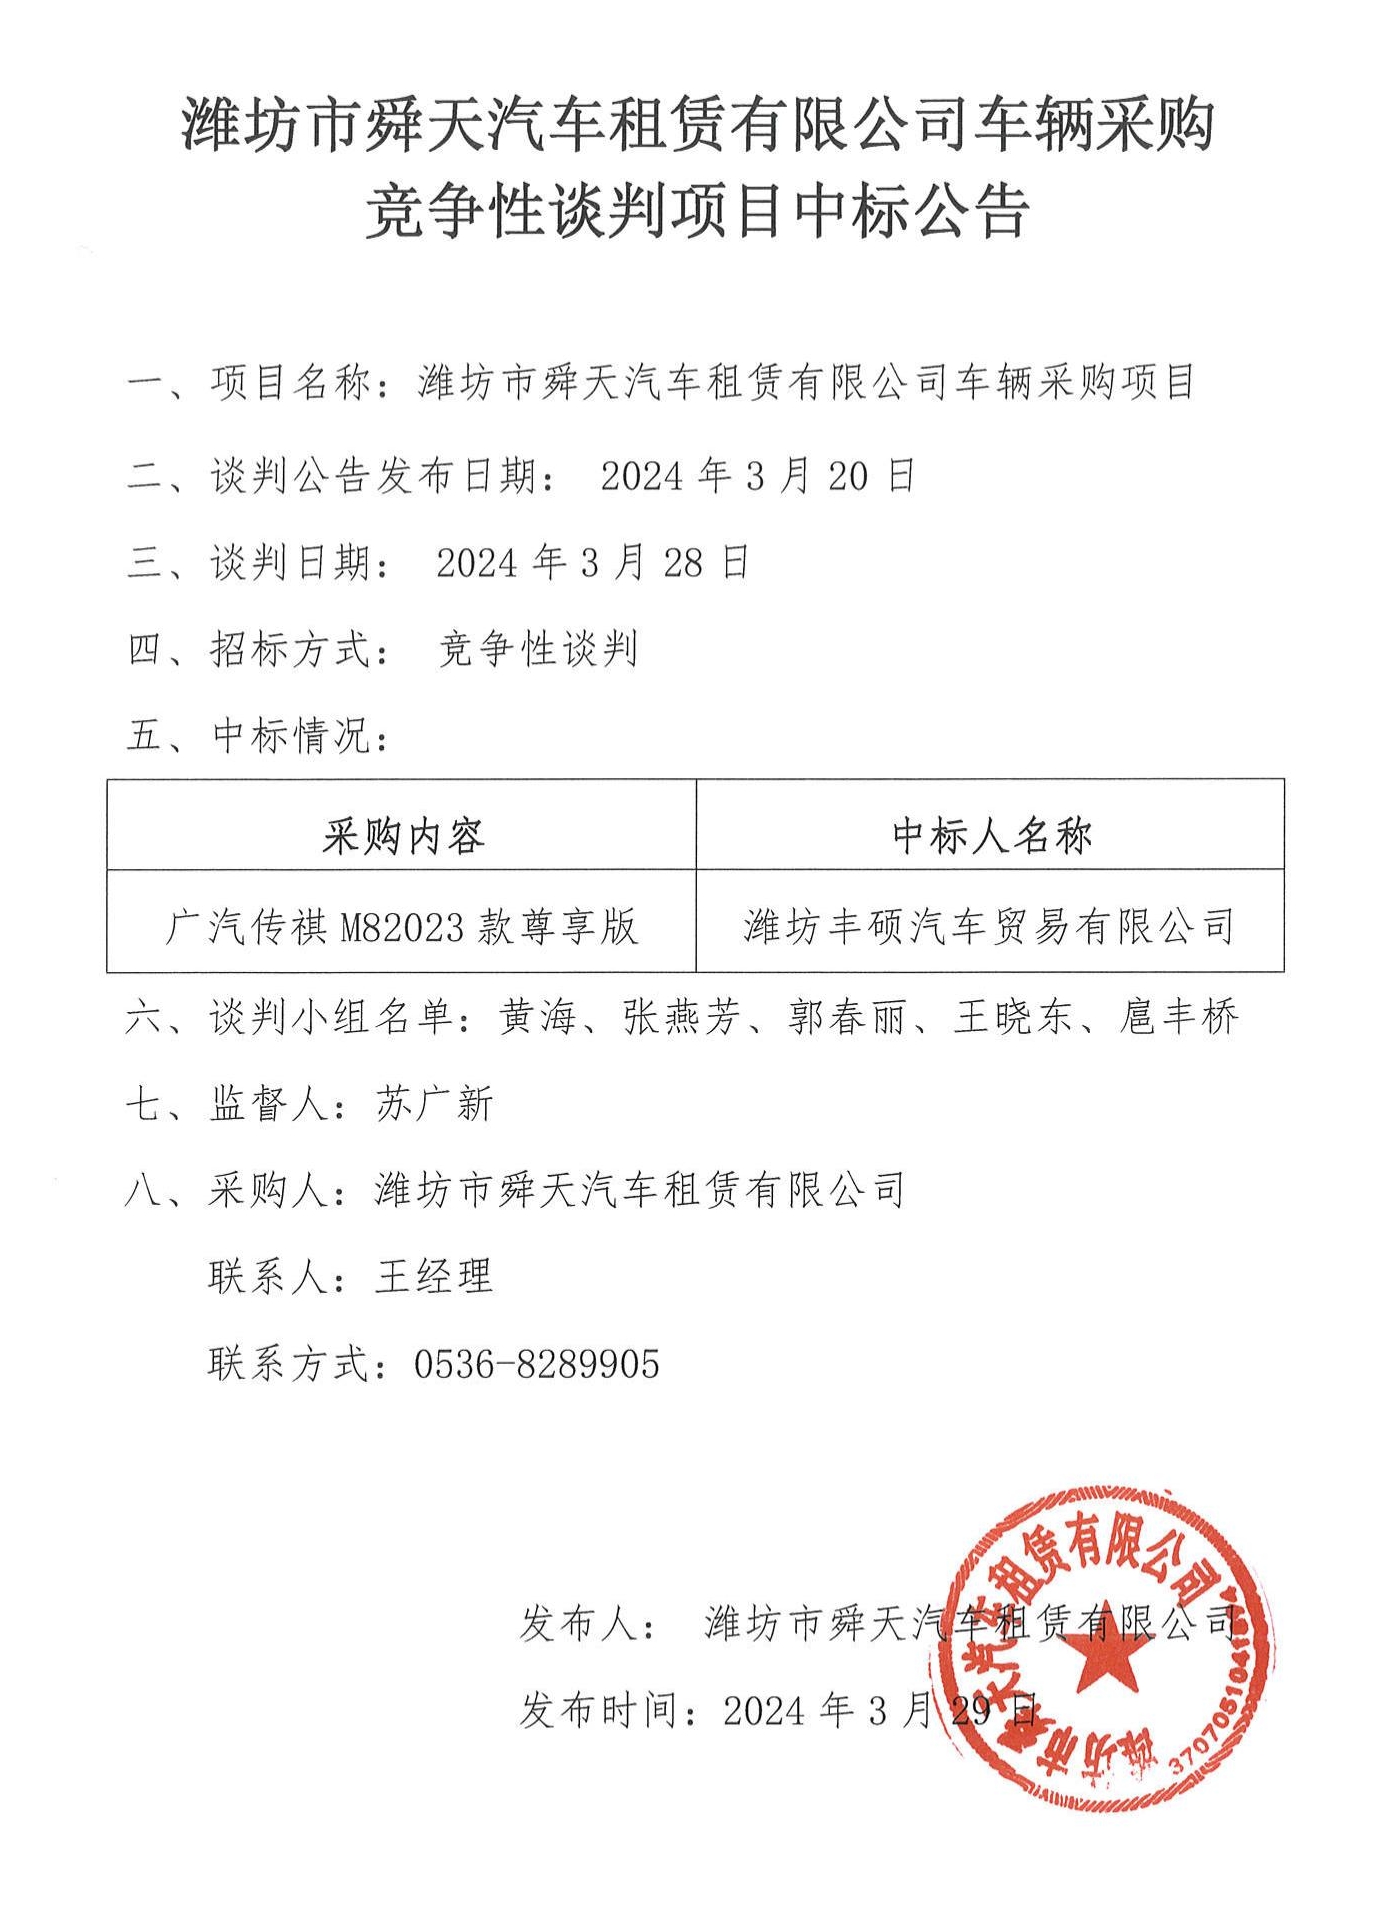 潍坊市舜天汽车租赁有限公司车辆采购竞争性谈判项目中标公告